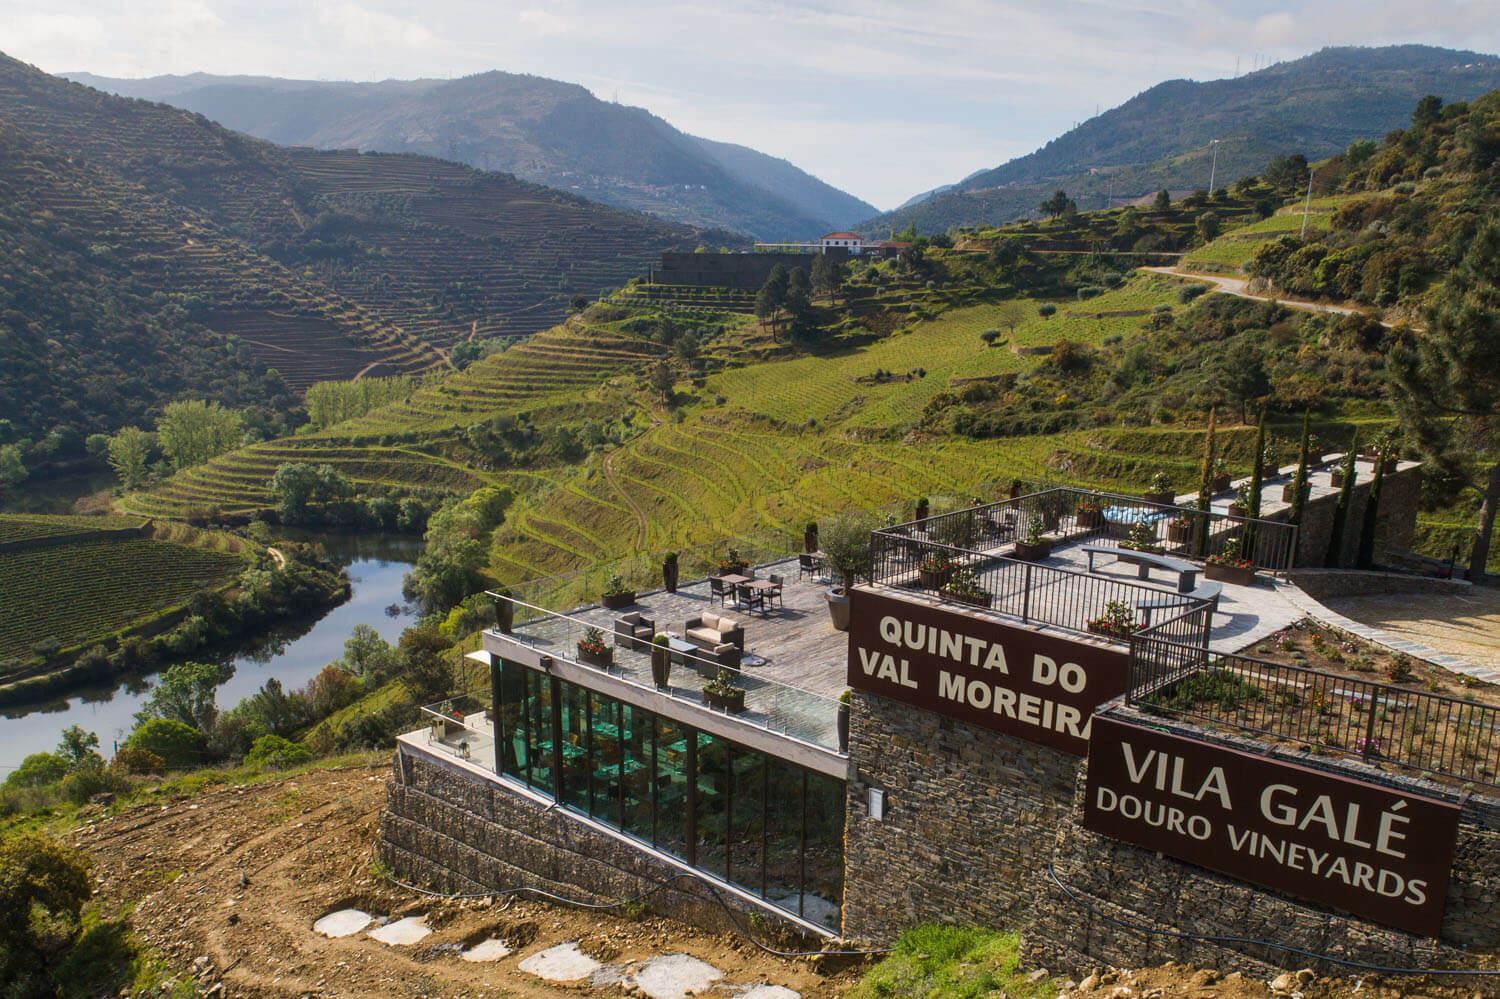 Hotel Vila Galé Douro Vineyards - Vue Aérienne